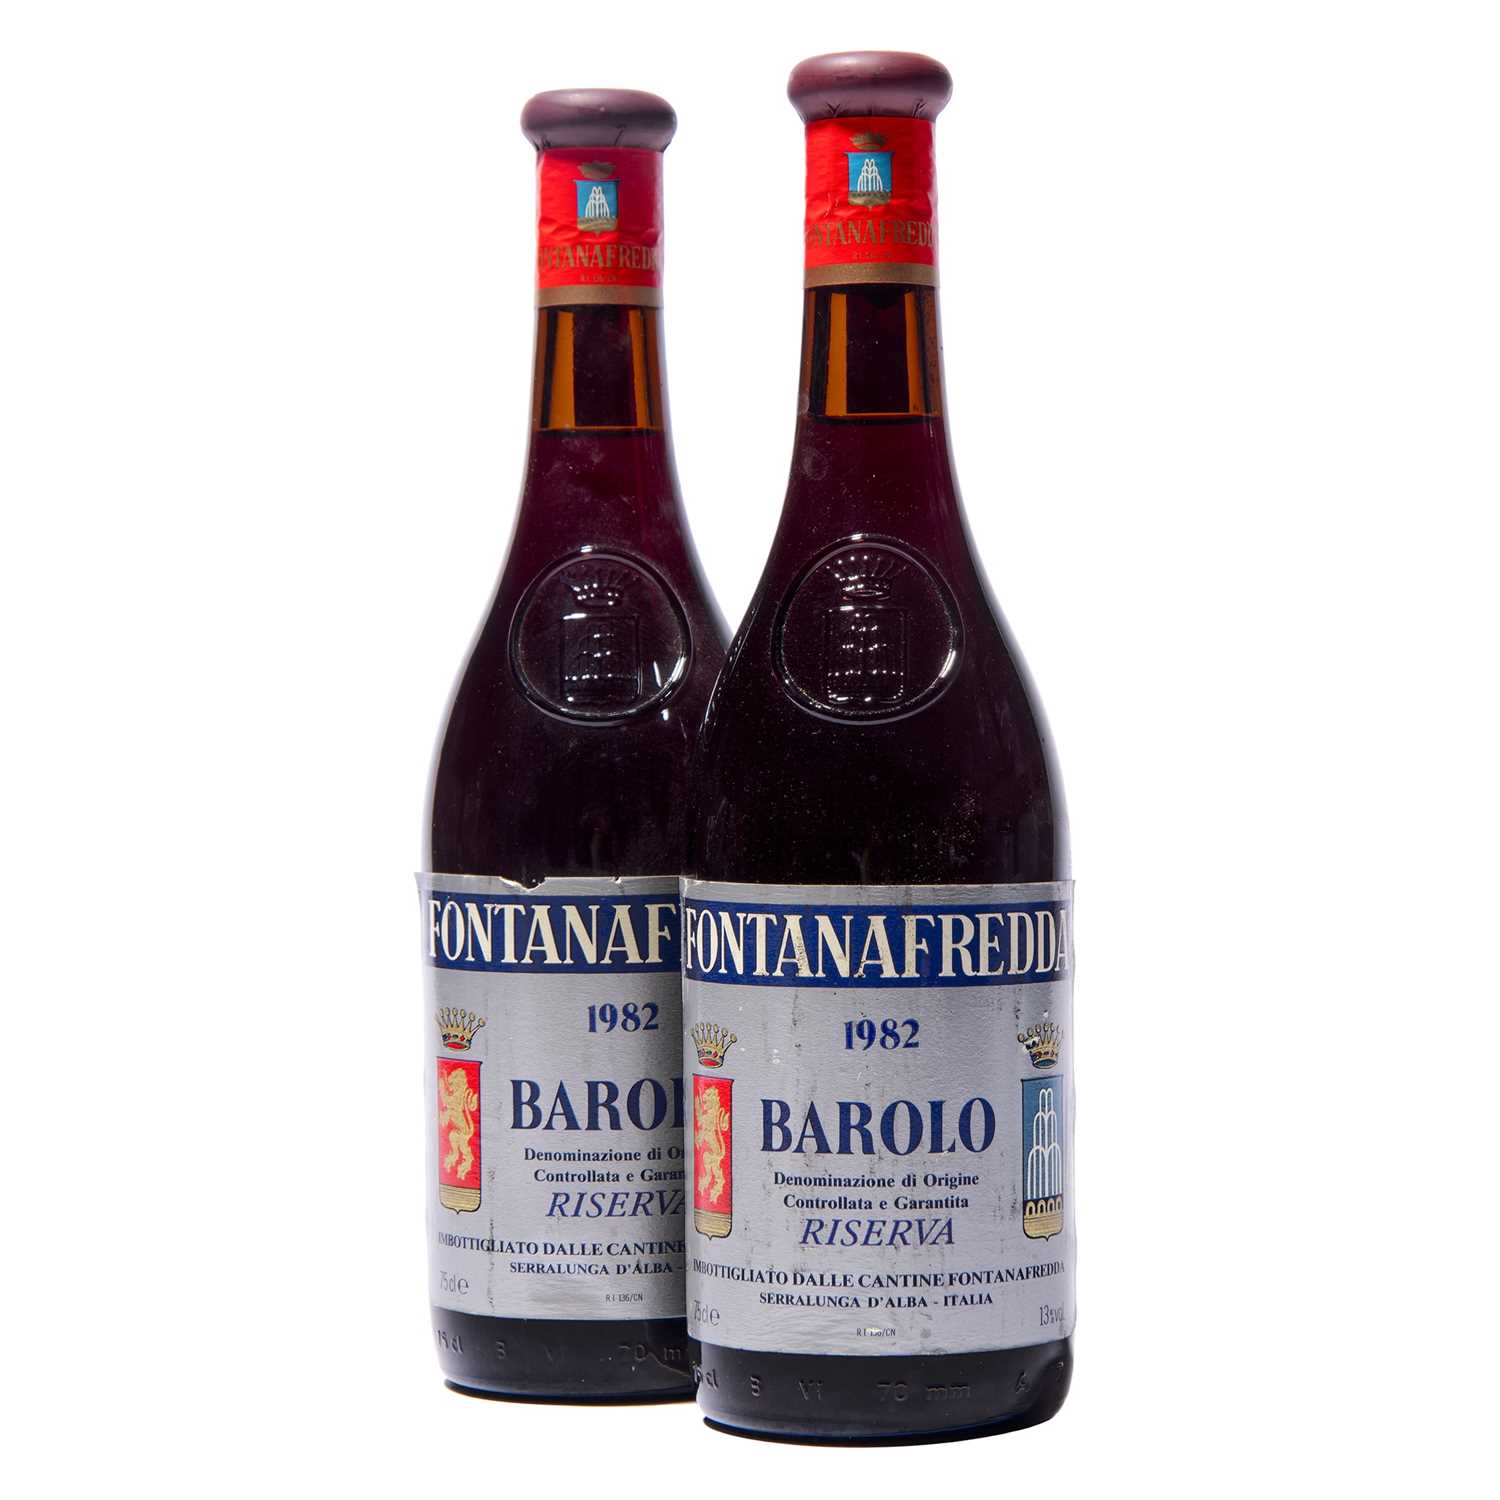 Lot 112 - 5 bottles 1982 Barolo Riserva Fontanafredda